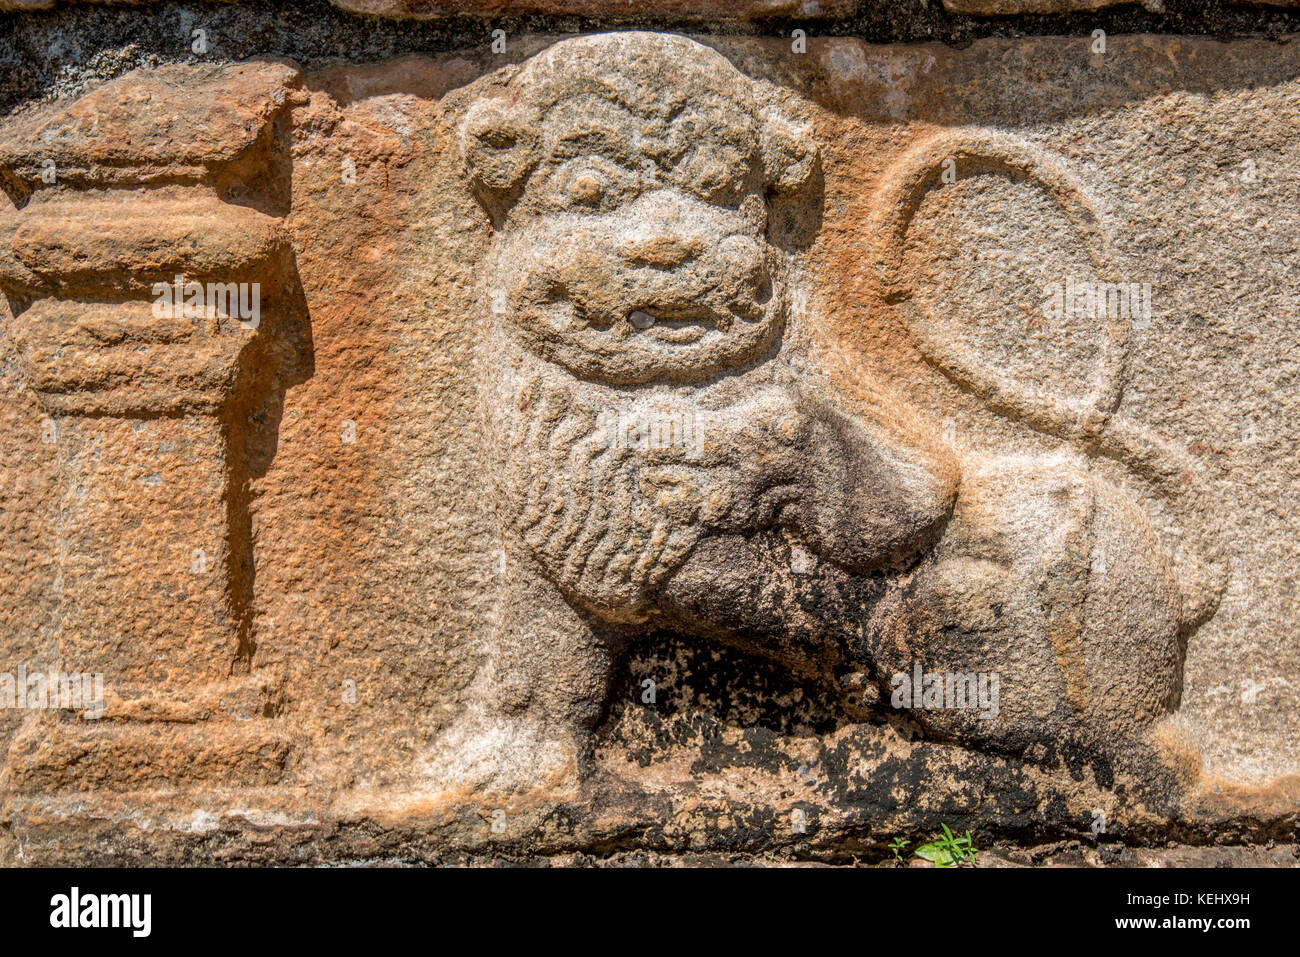 Sculptures de lion polonnaruwa au Sri Lanka Banque D'Images